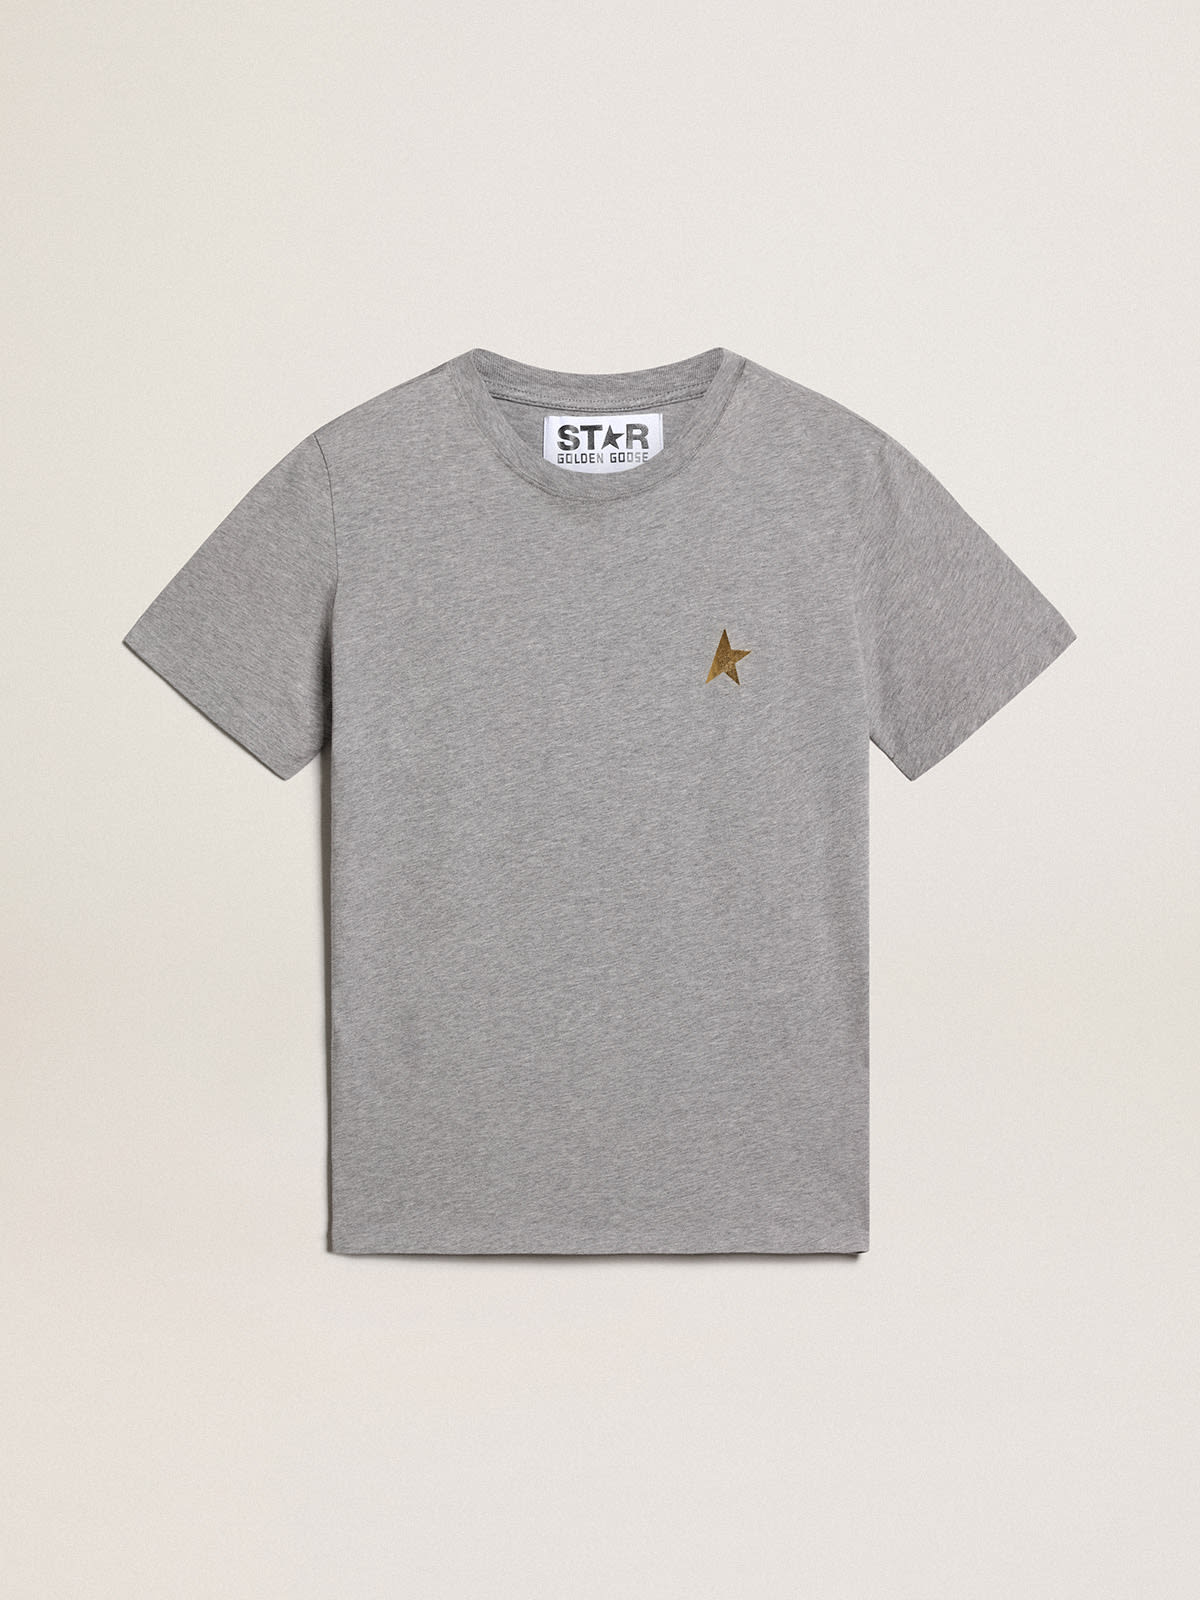 Golden Goose - Camiseta de la colección Star en color gris jaspeado con estrella de color dorado en contraste en el delantero in 